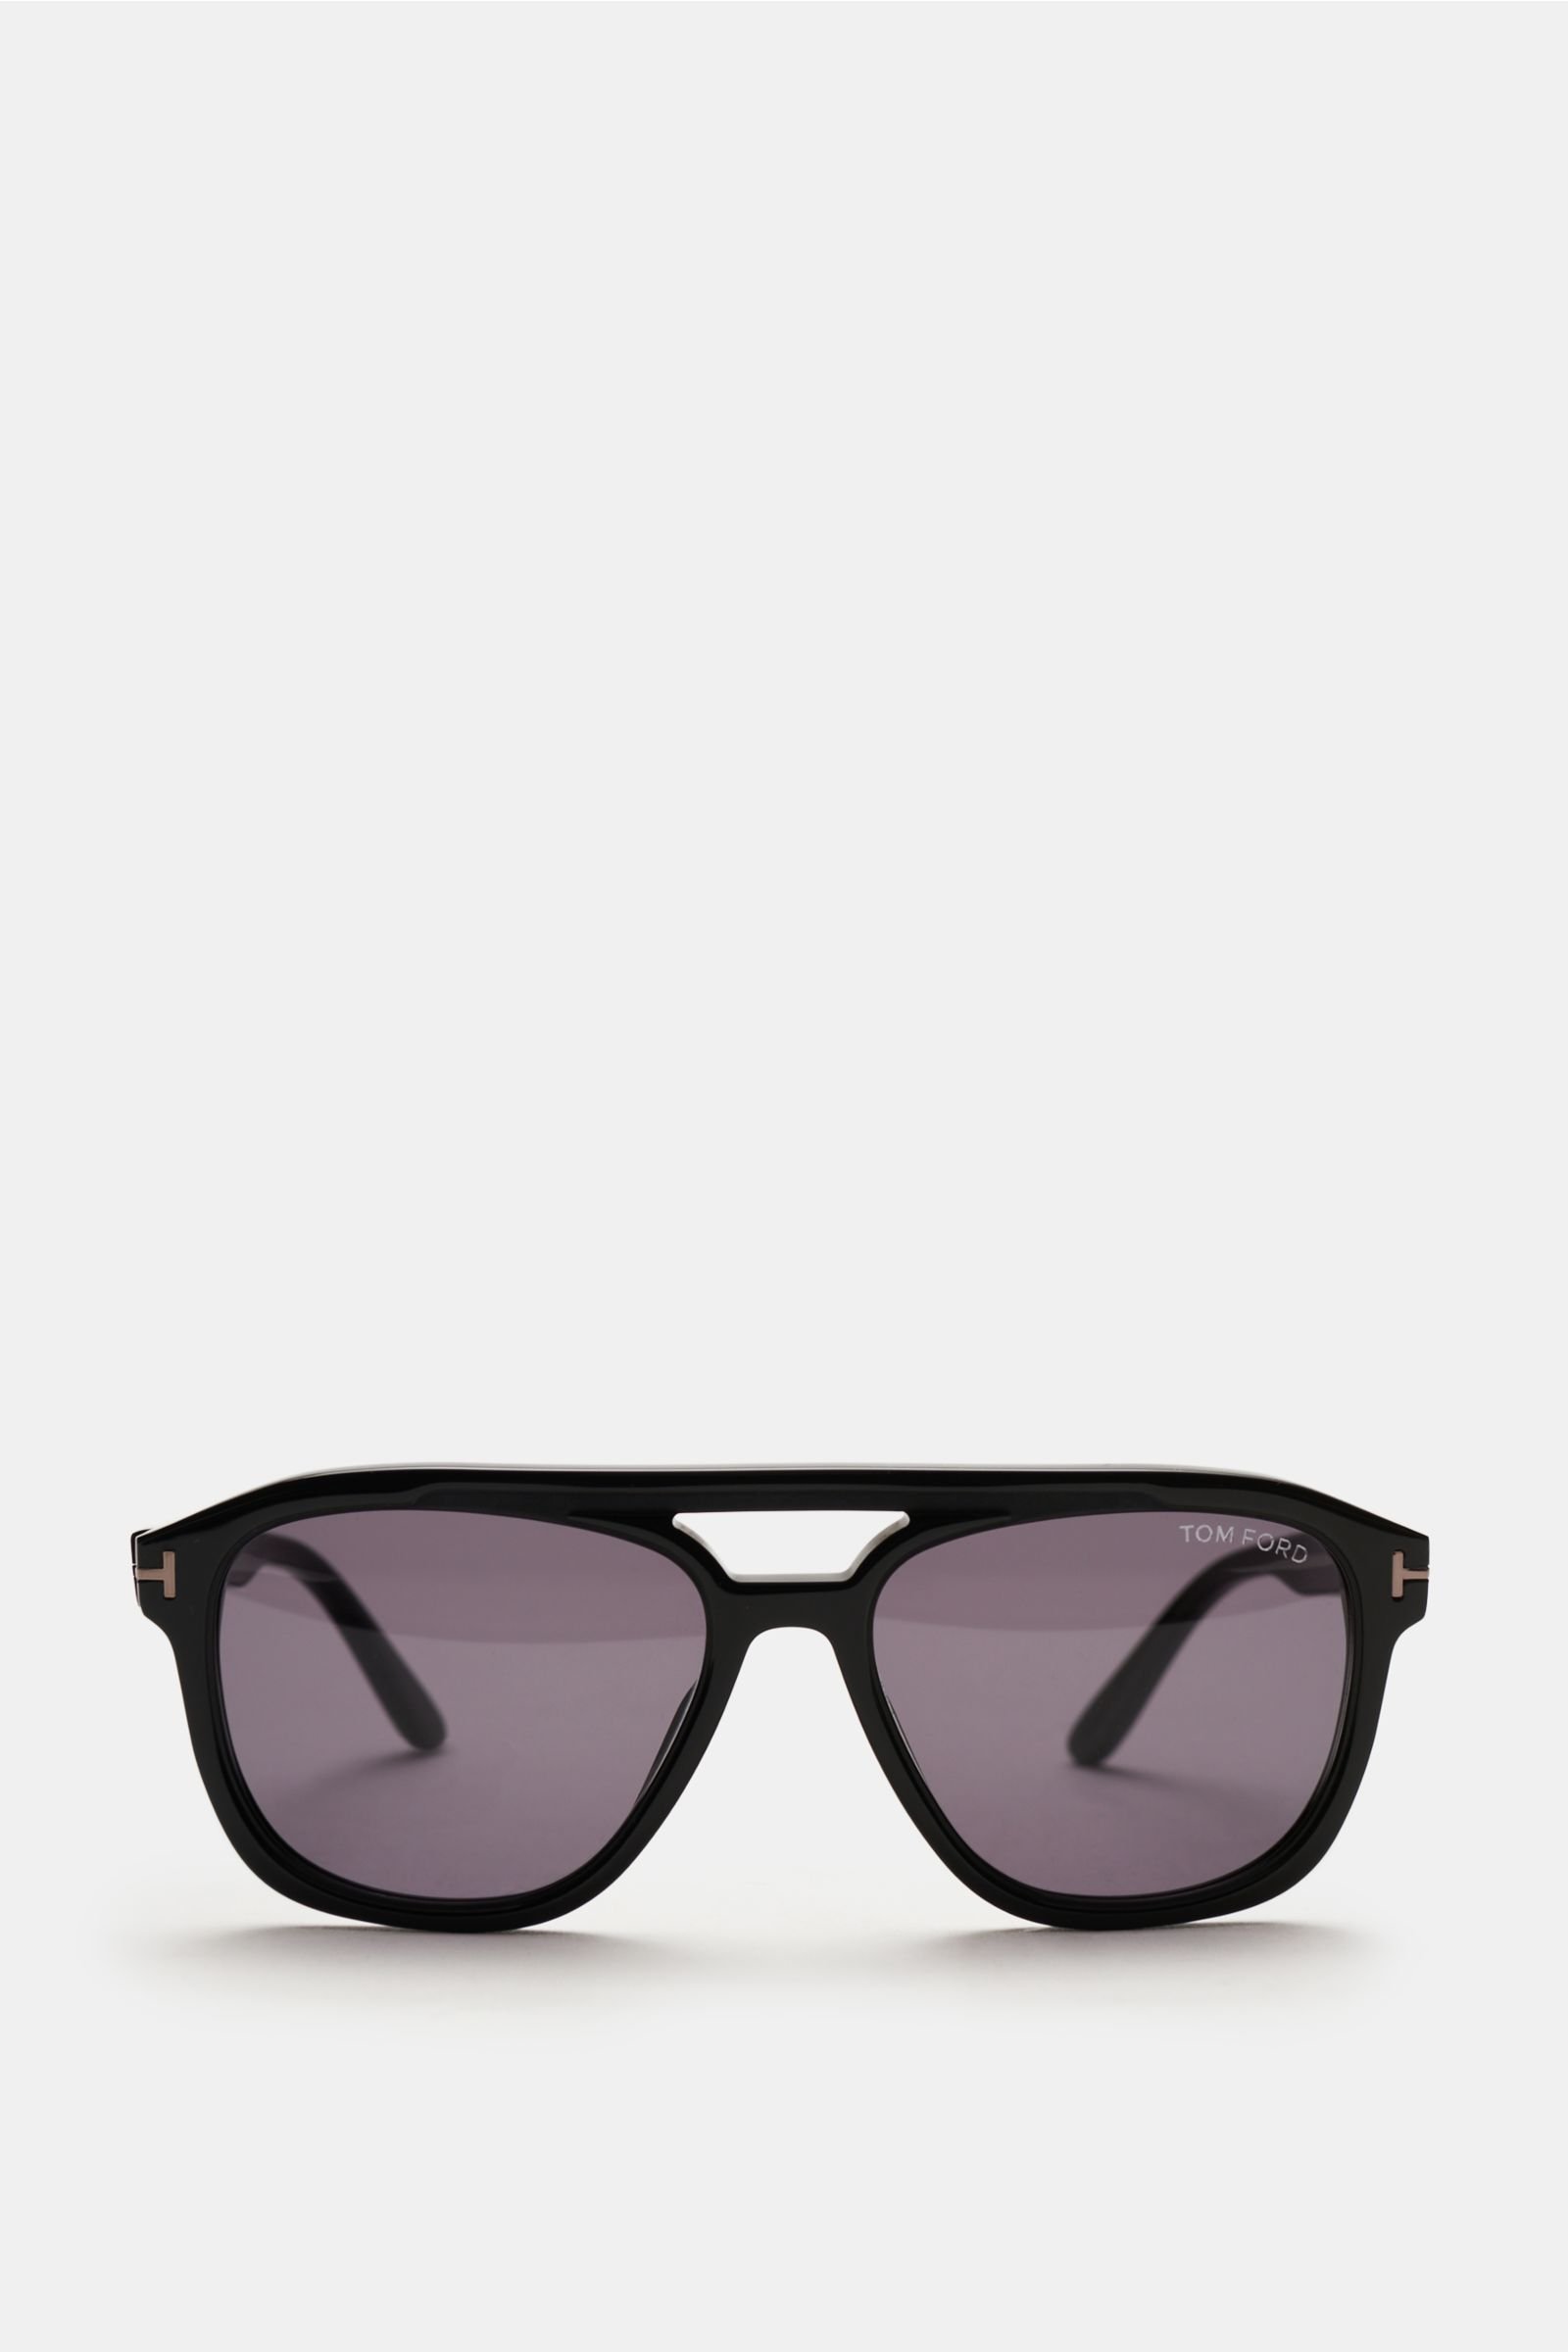 Sonnenbrille 'Gerrard' schwarz/grau